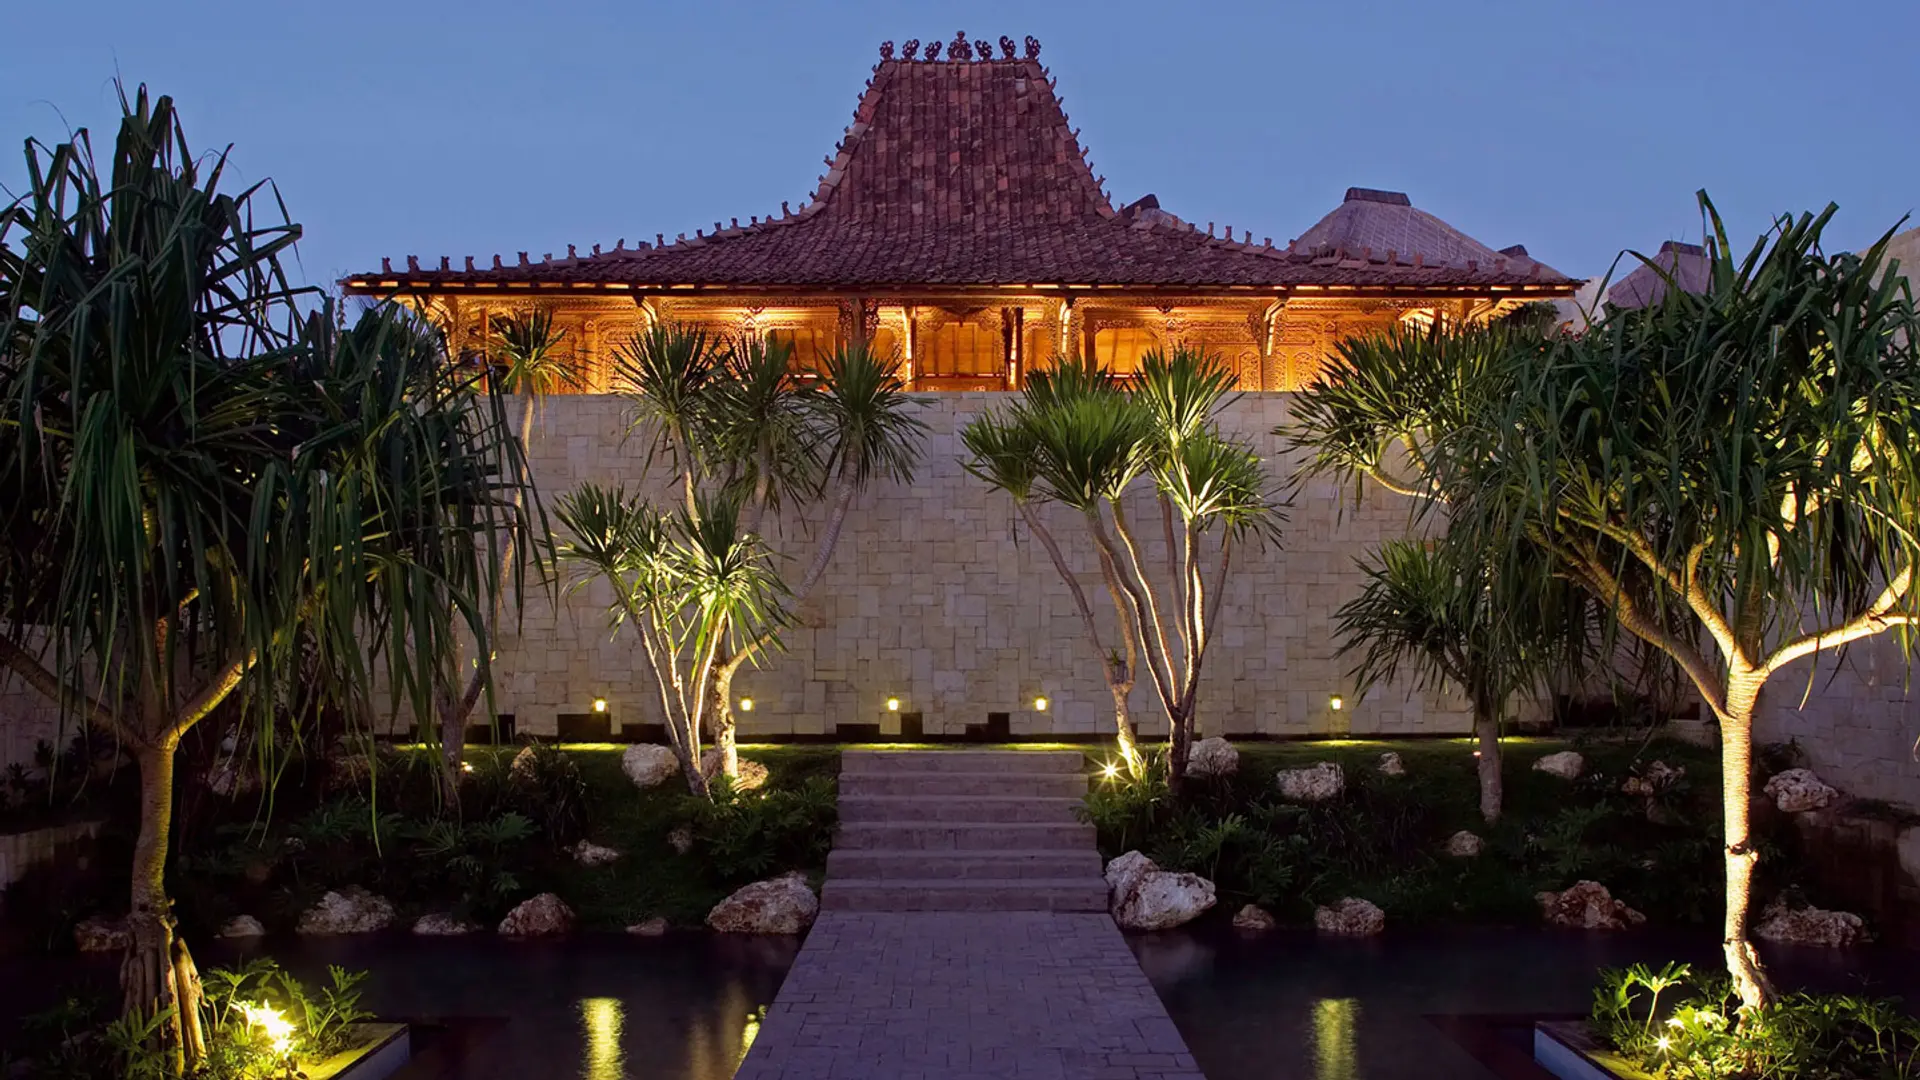 Hotel review Service & Facilities' - Bulgari Resort Bali - 2